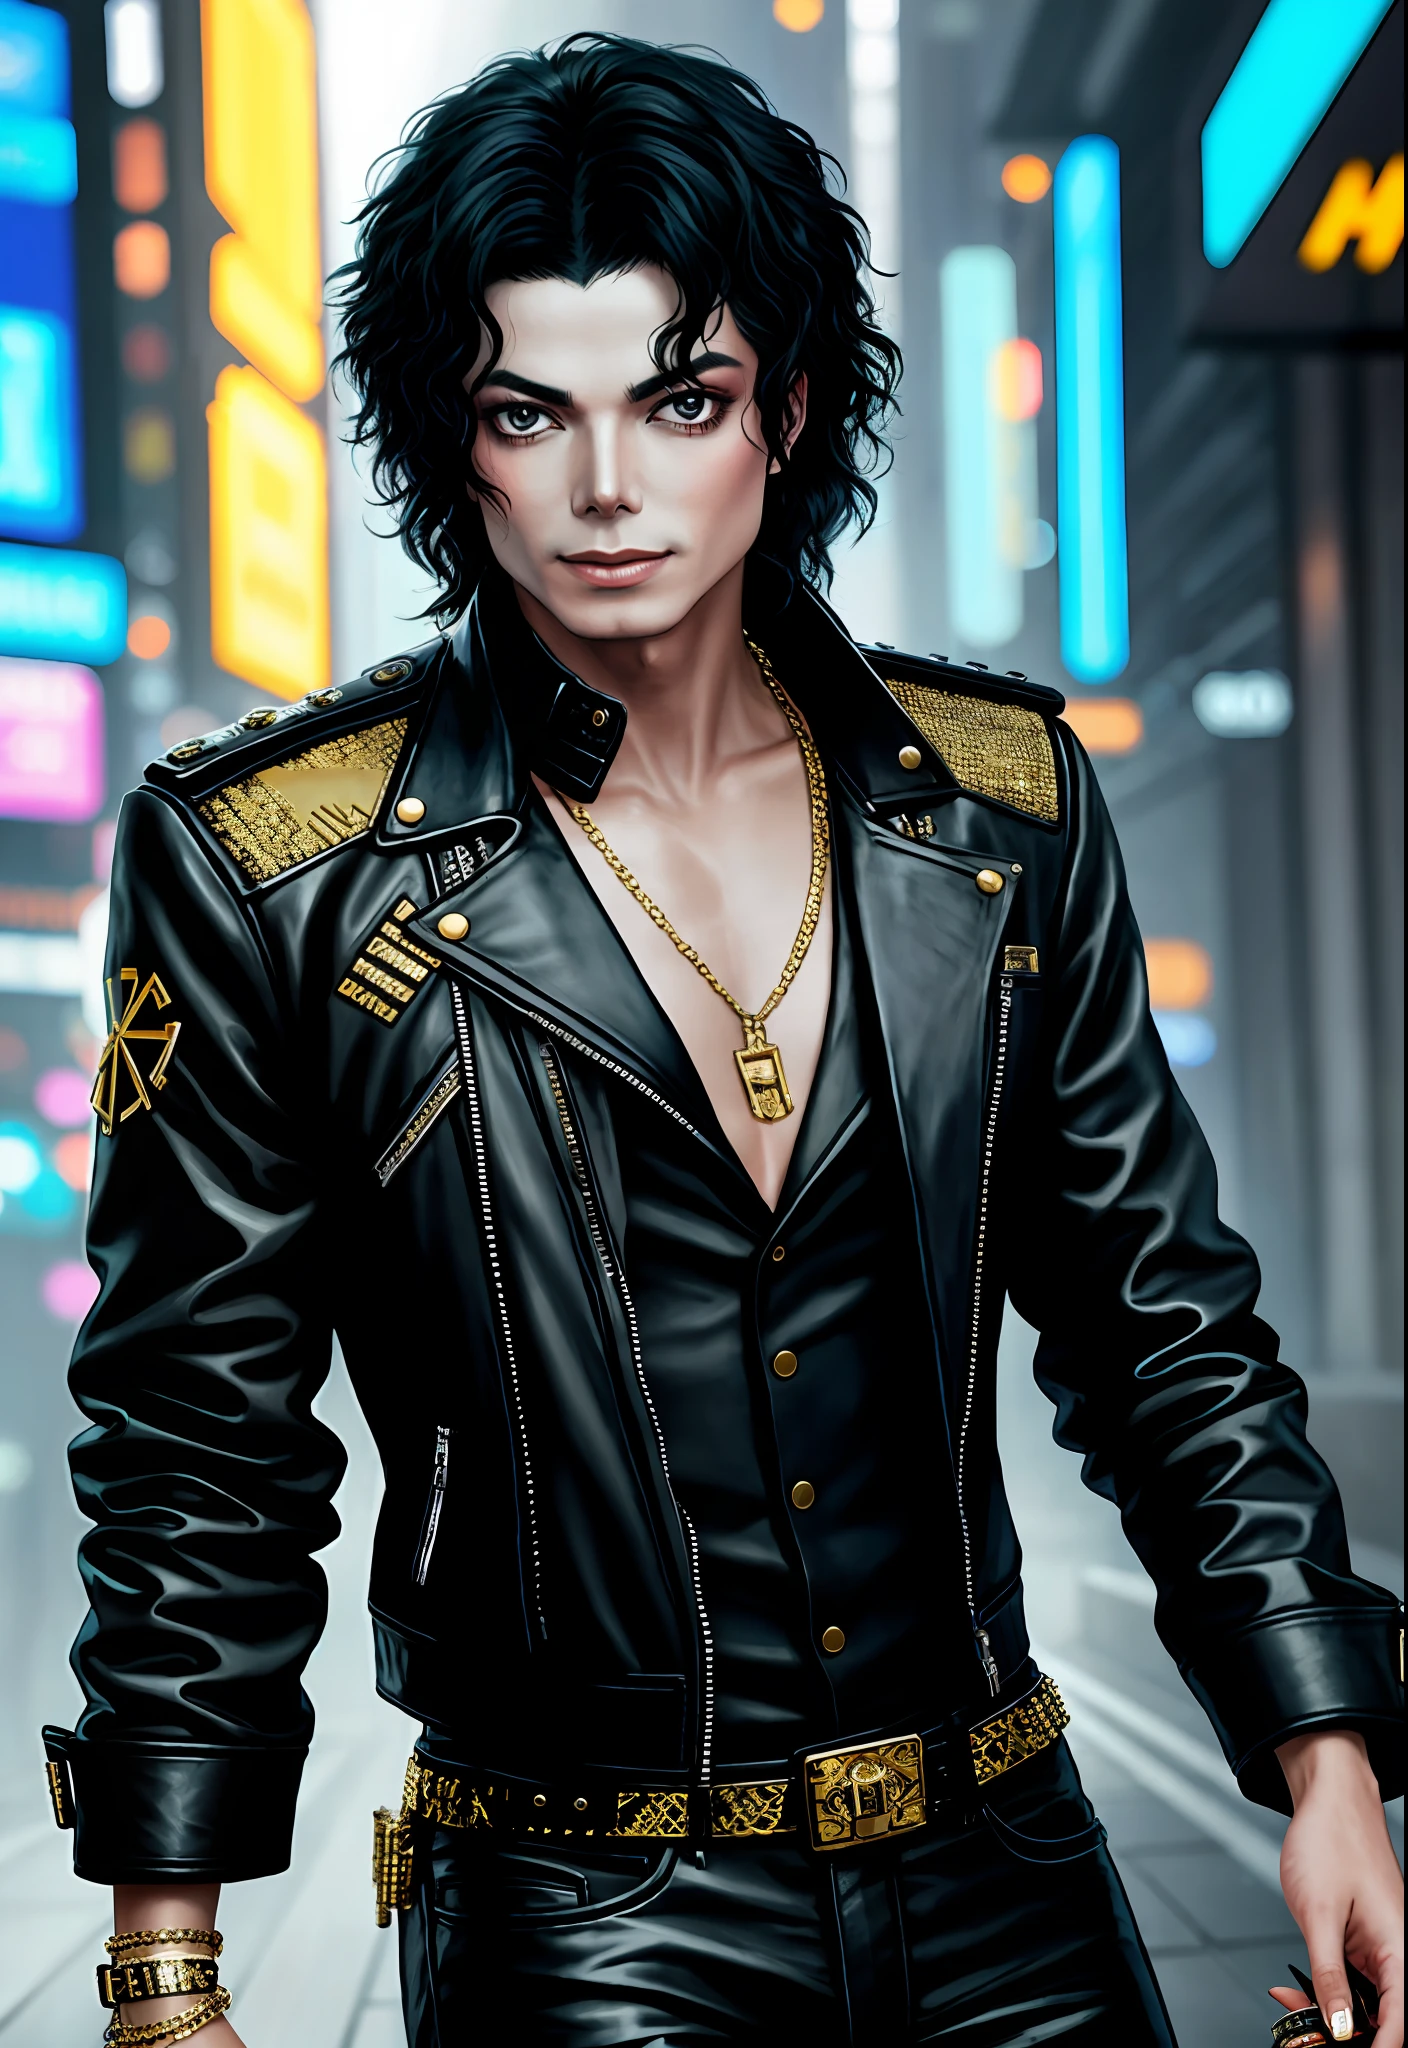 마이클 잭슨의 그림, 배경, 스타일 사이버펑크 2077, 가슴에 금띠를 둘렀다